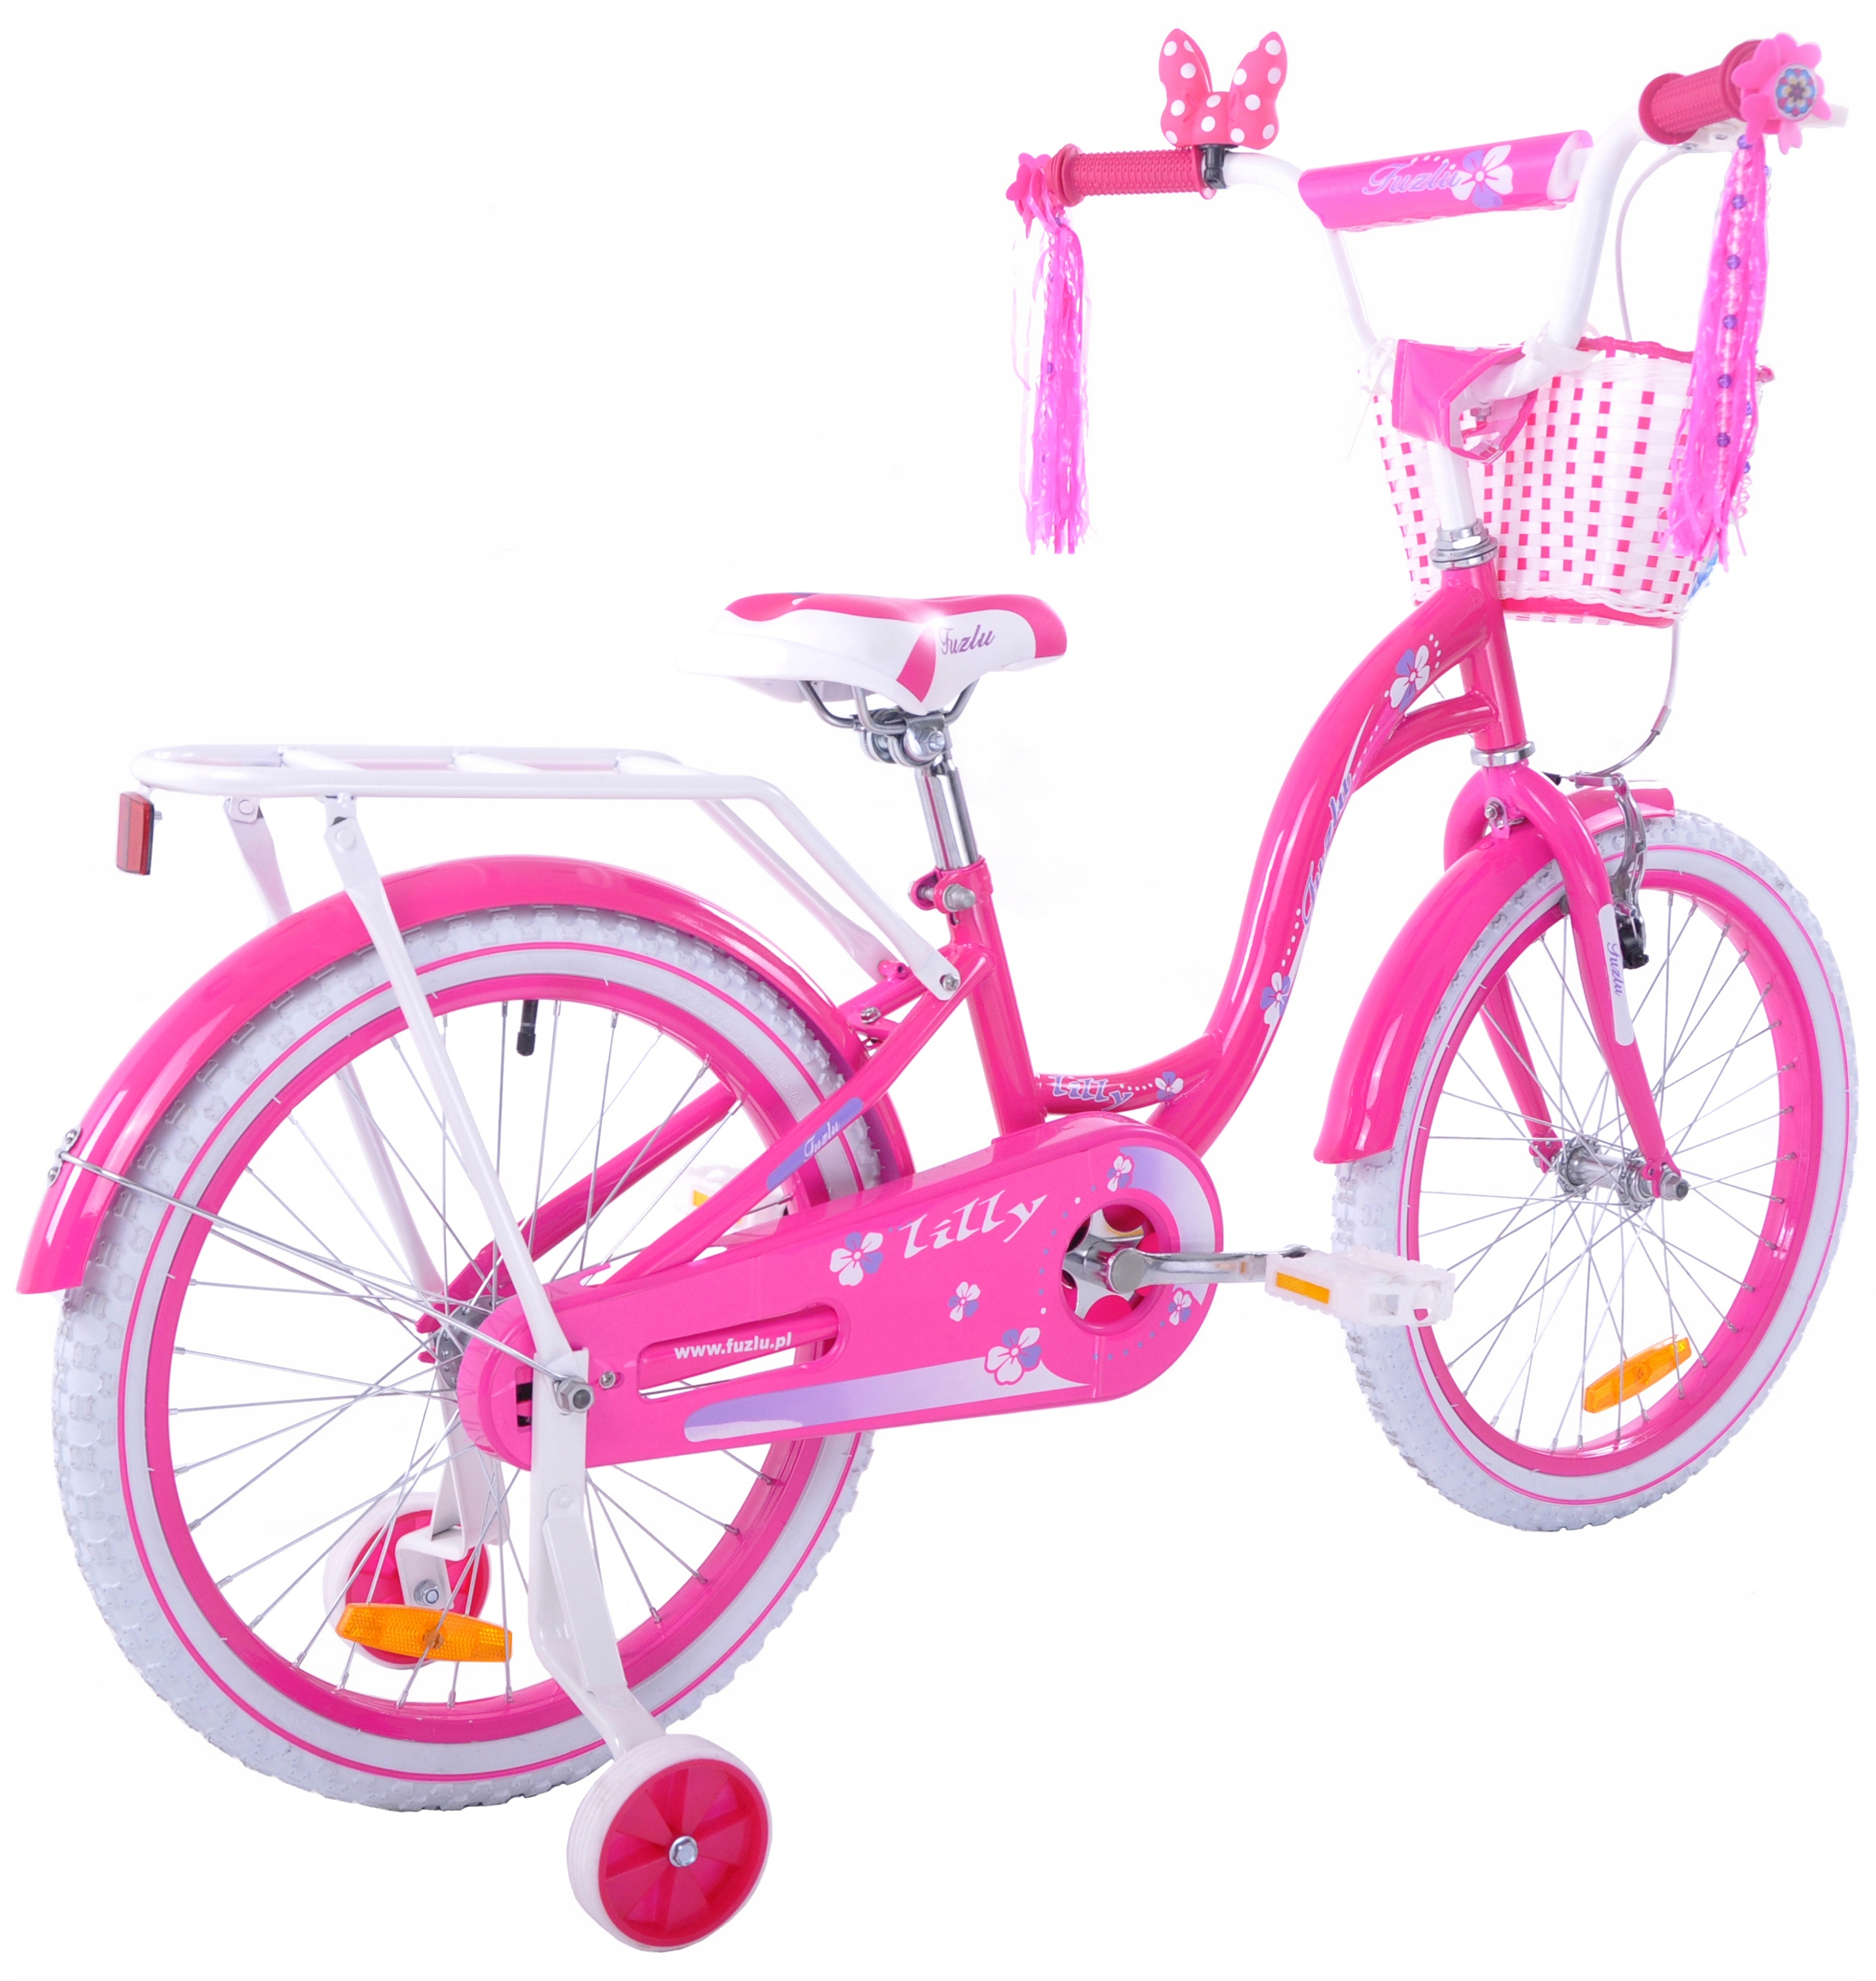 Какой велосипед купить 7 лет. Велосипед для девочки. Велосипед для девочки 7 лет. Велосипед розовый для девочки 5 лет. Велосипед для девочки 8 лет.